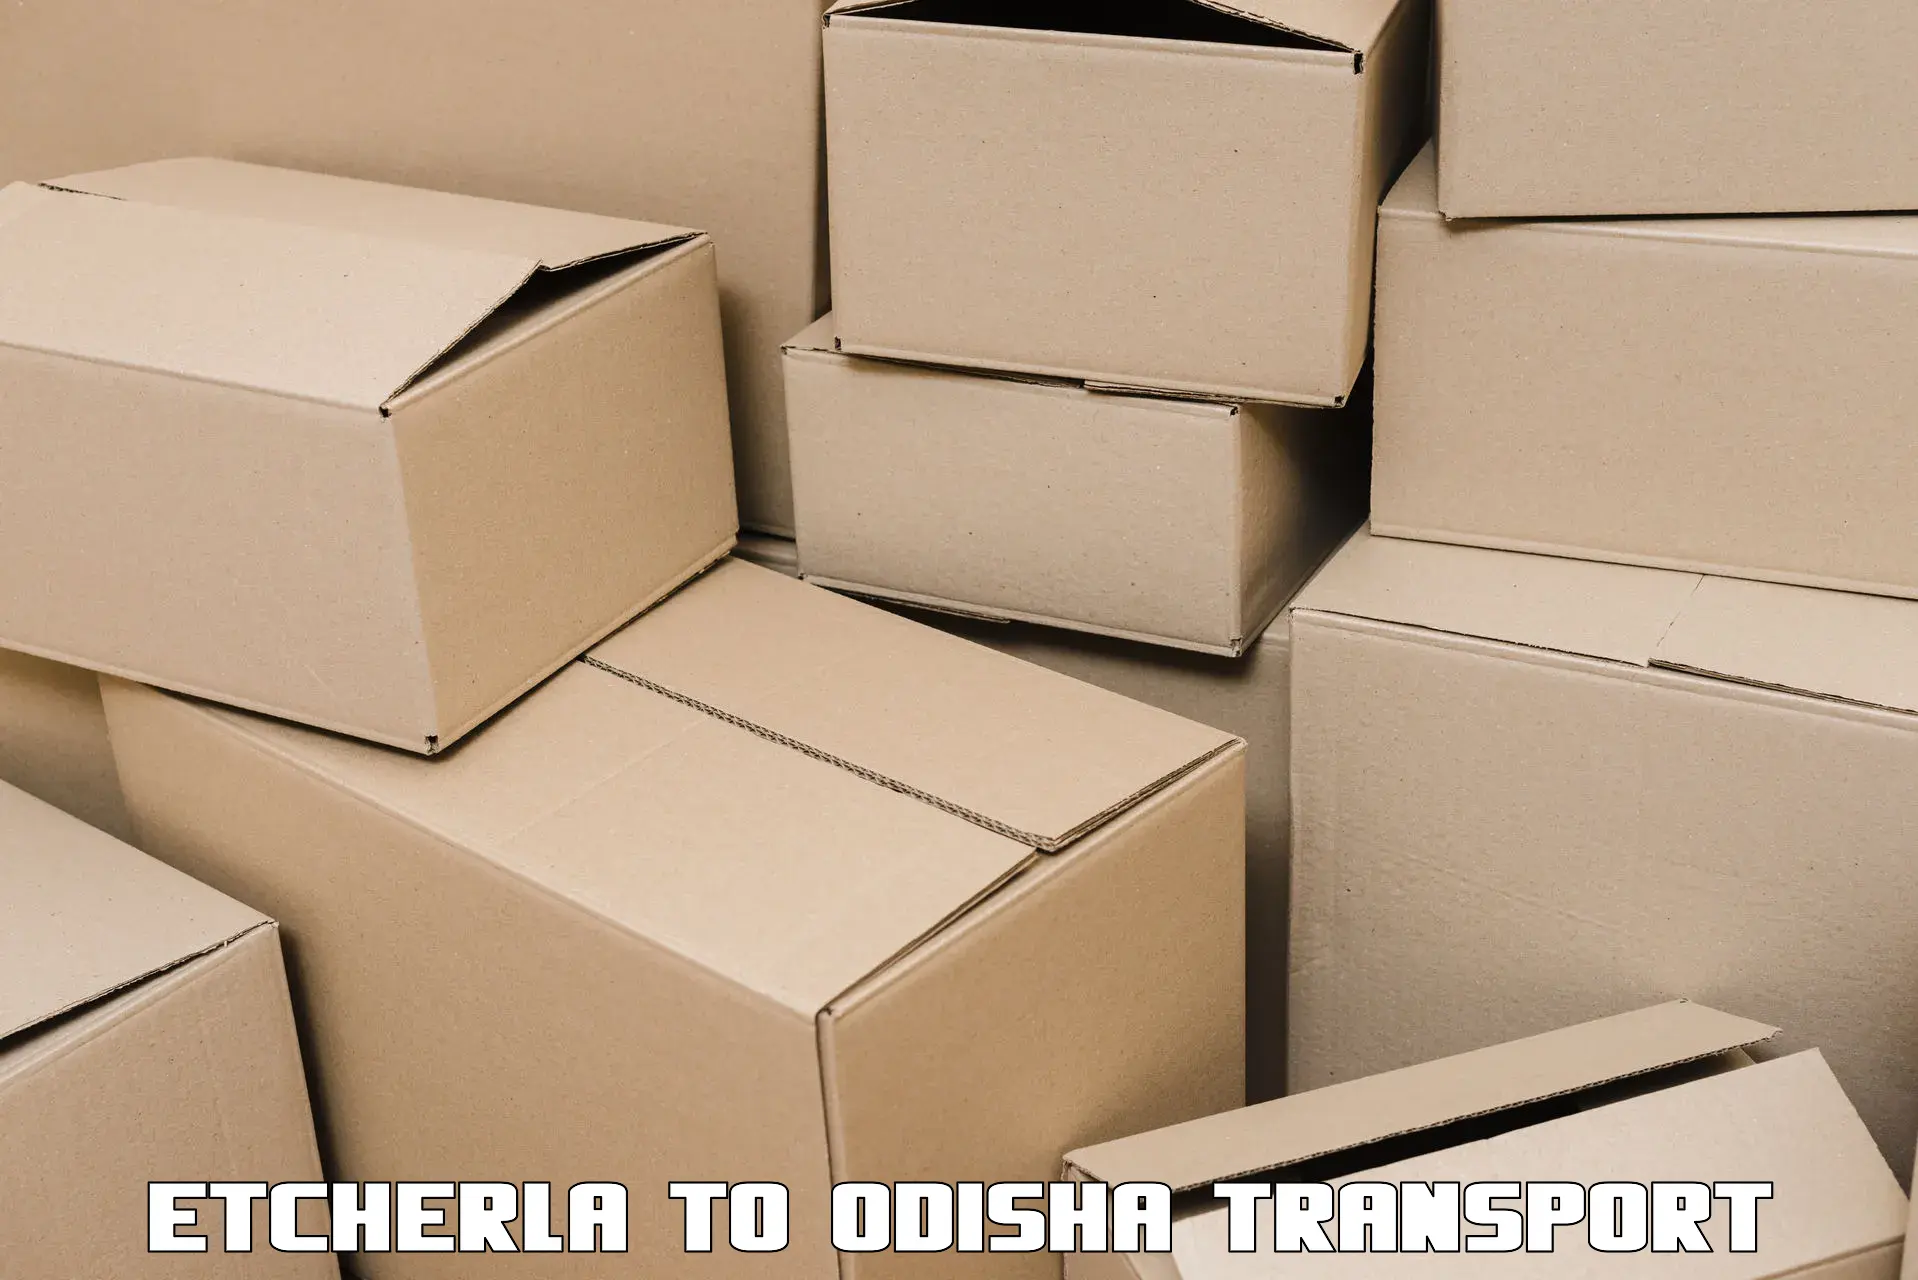 Furniture transport service Etcherla to Odisha